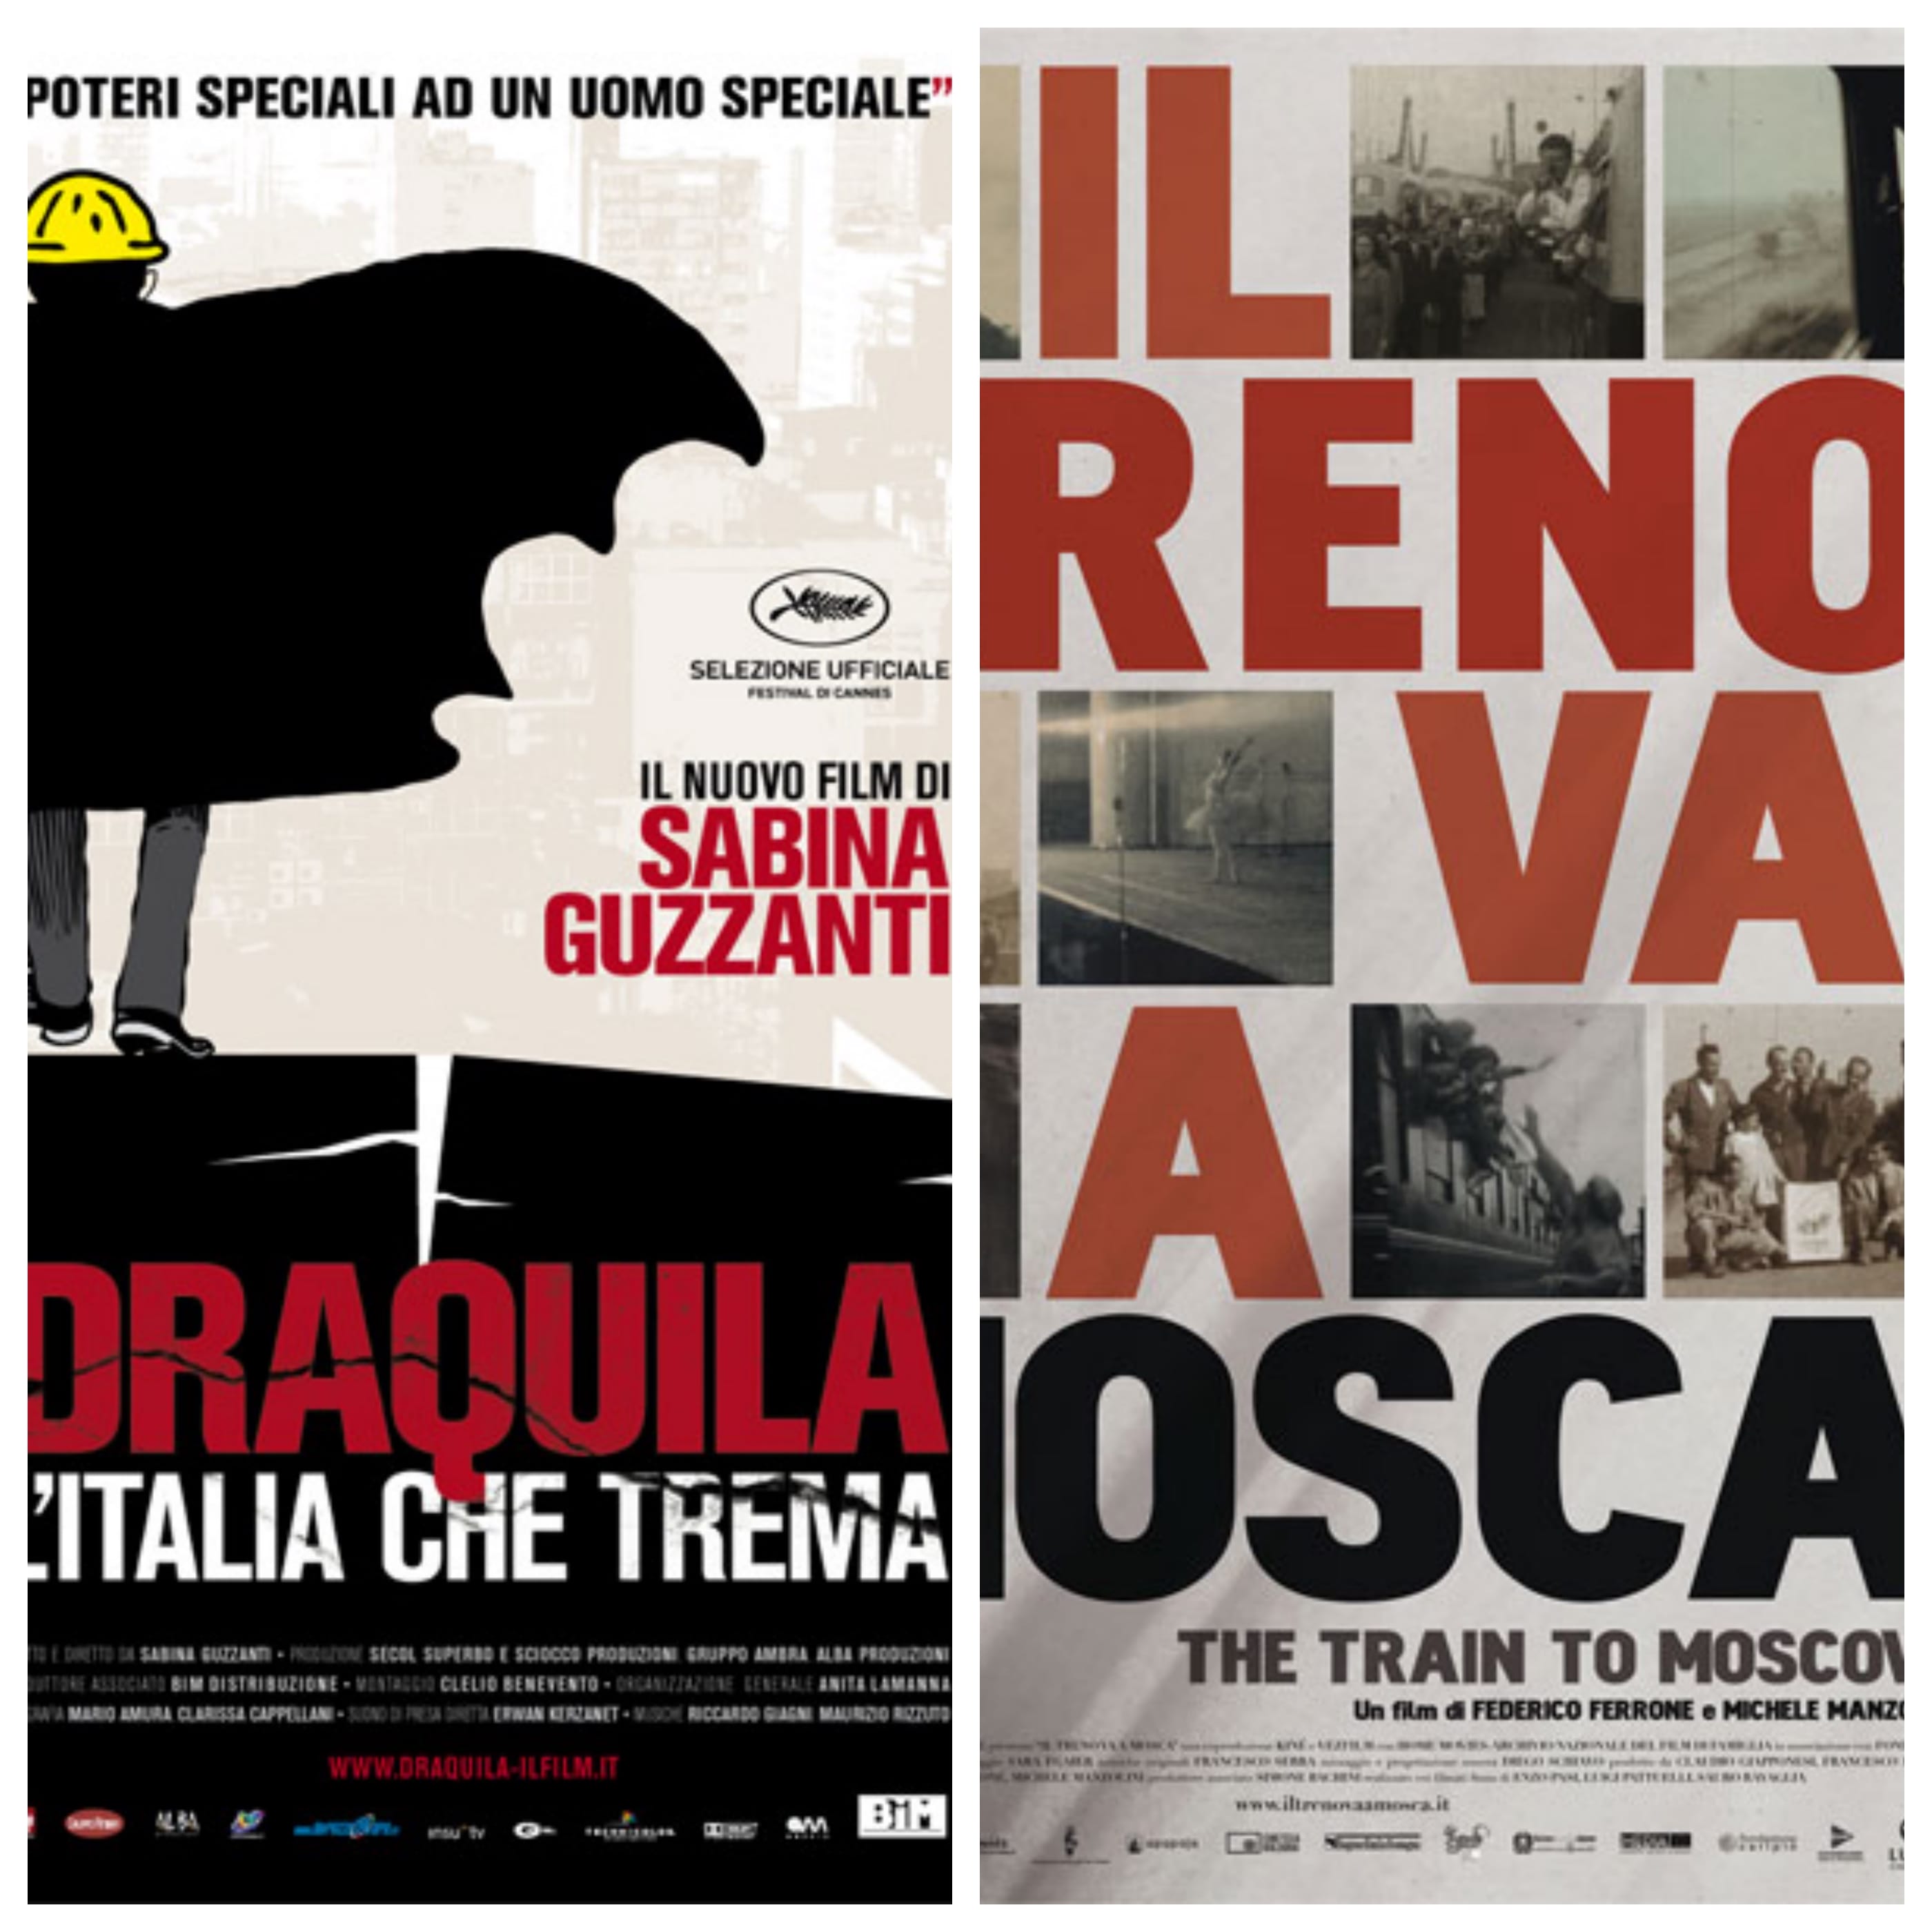 Il cinema italiano oggi, tra realtà e finzione